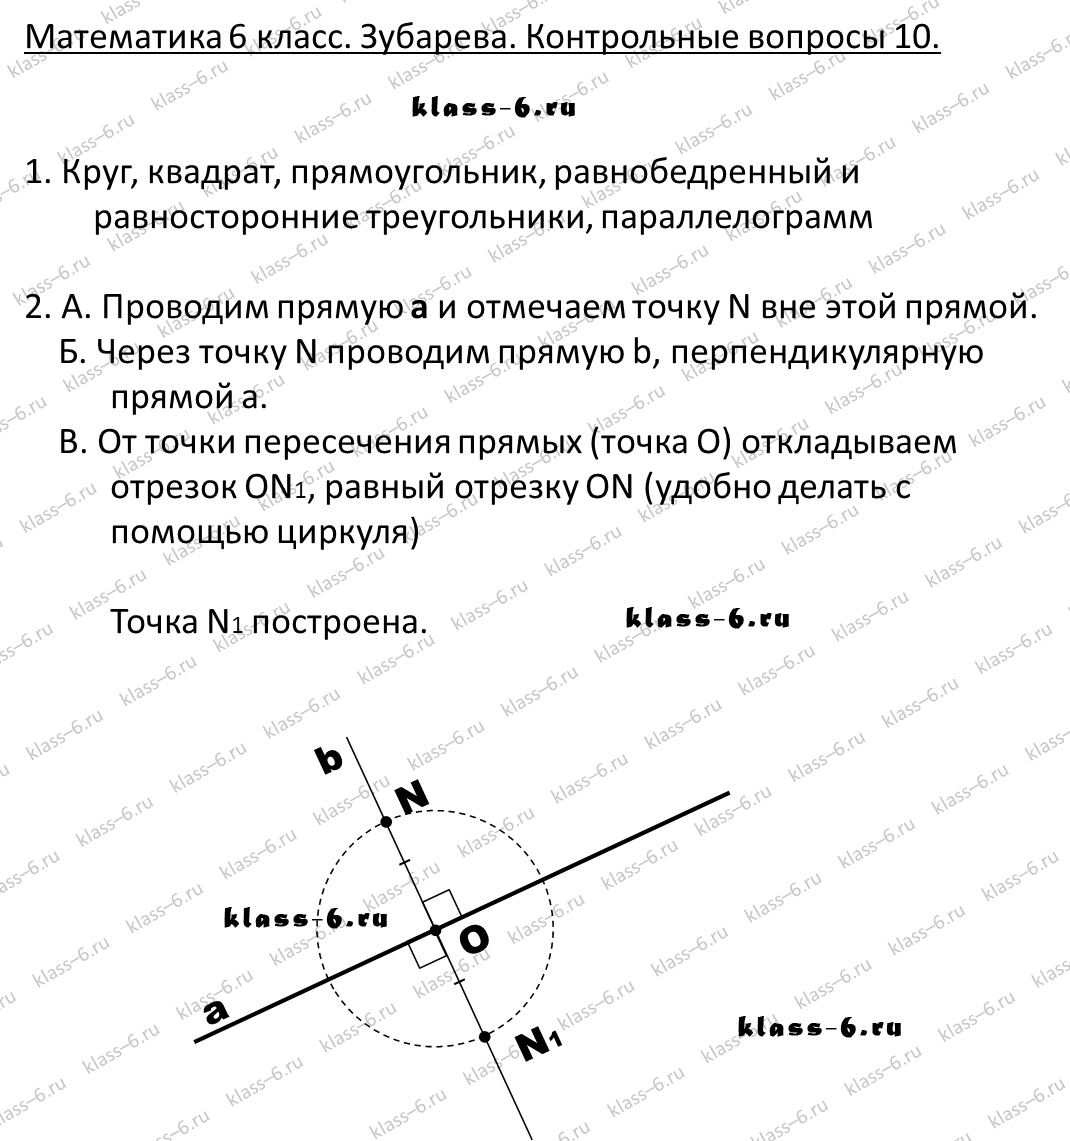 гдз математика Зубарева 6 класс ответ и подробное решение с объяснениями контрольных вопросов к параграфу № 10